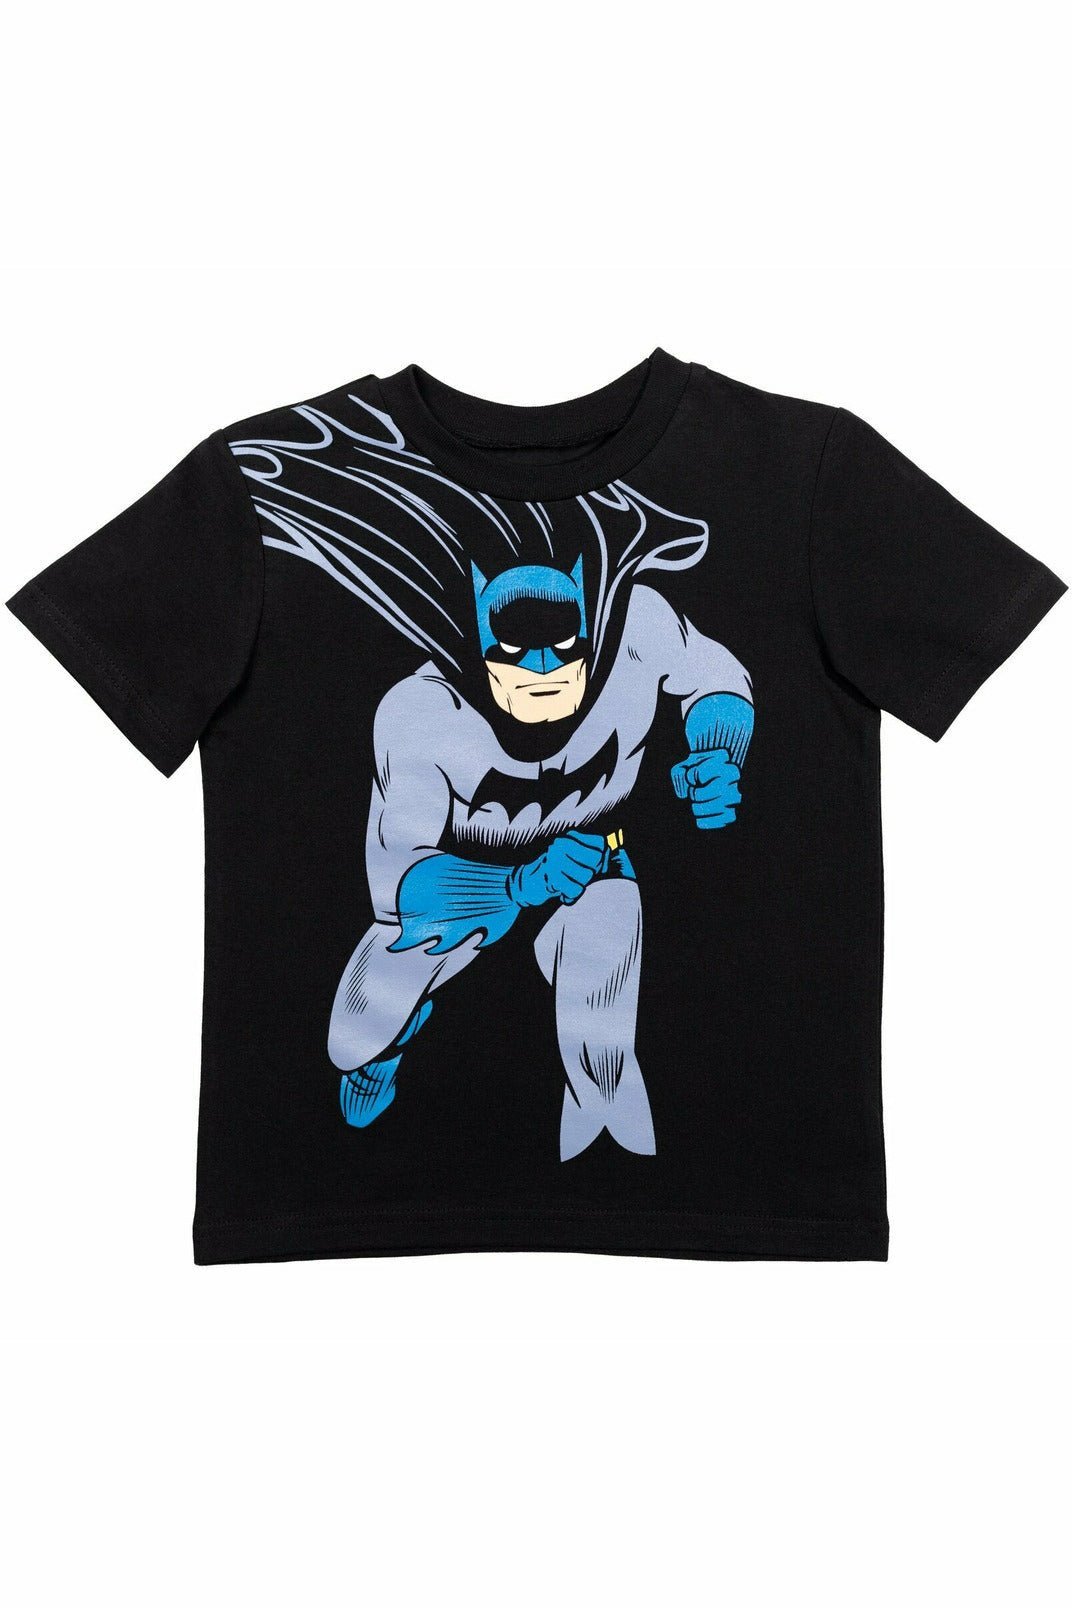 DC Comics Justice League Batman 2 Pack Graphic T-Shirt - imagikids